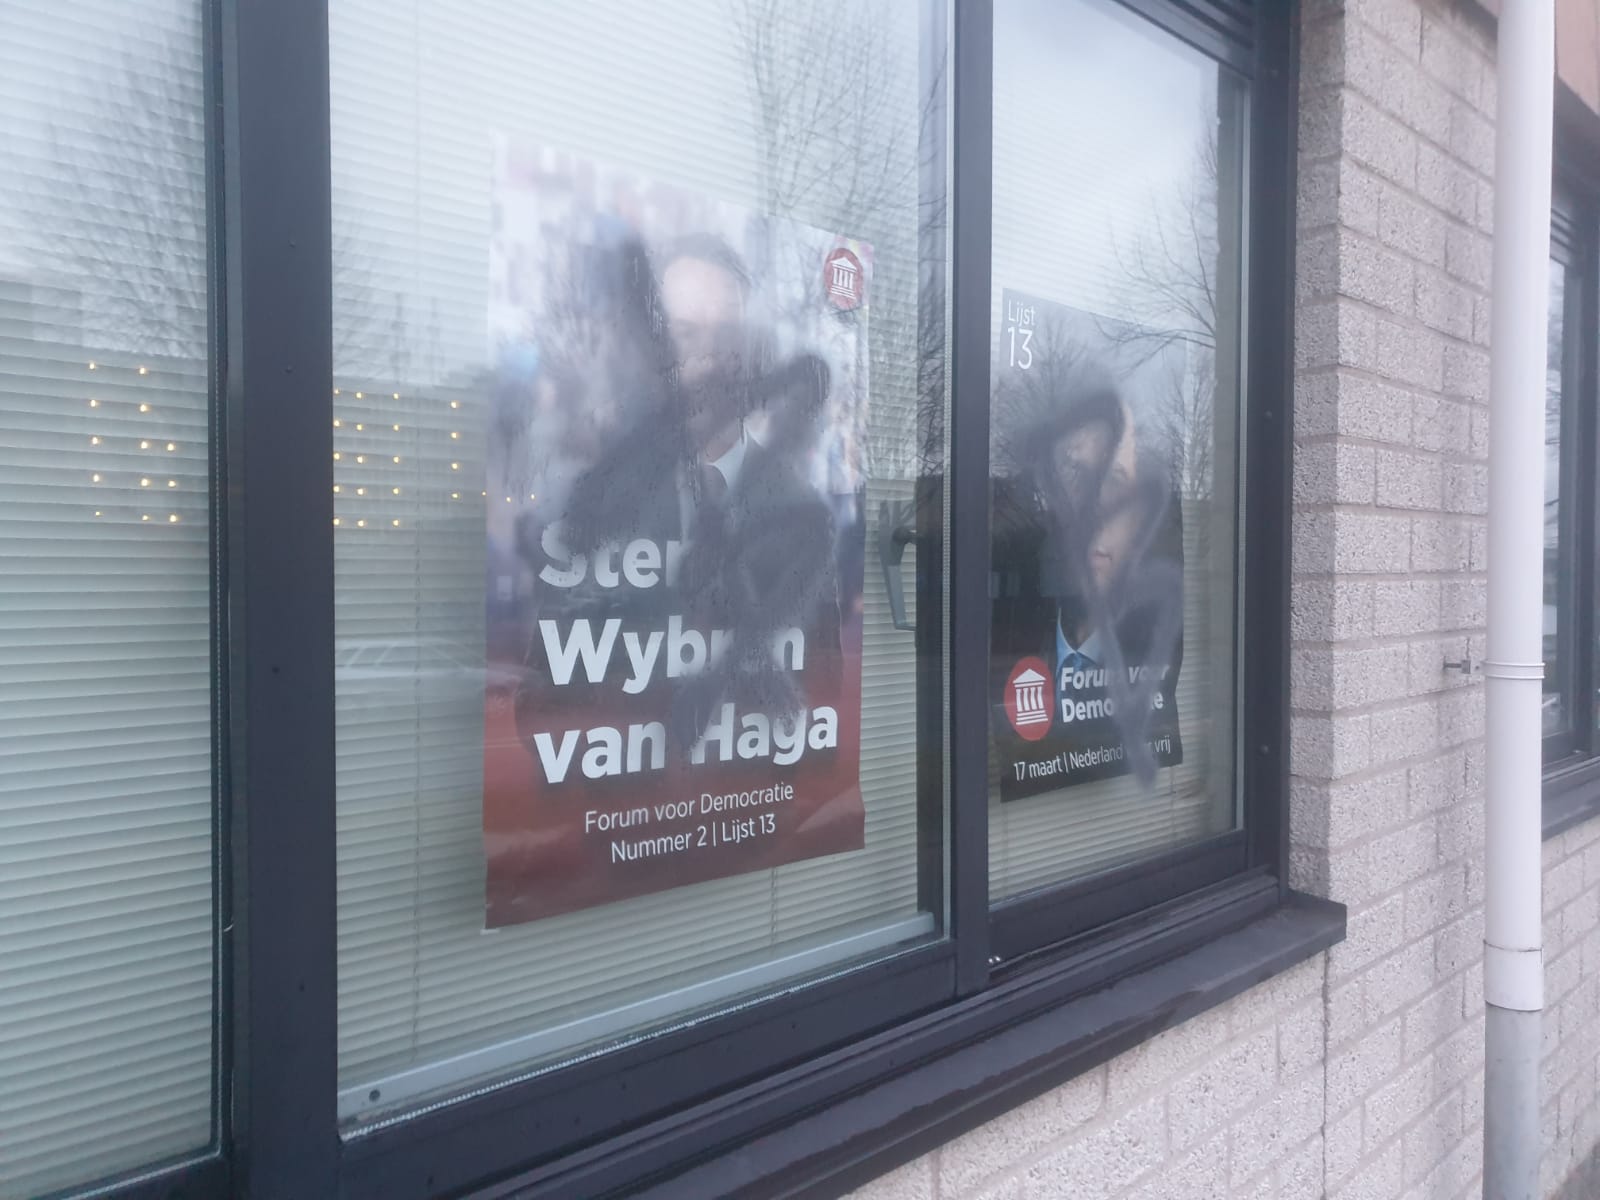 Woning met politieke posters achter het raam met verf beklad